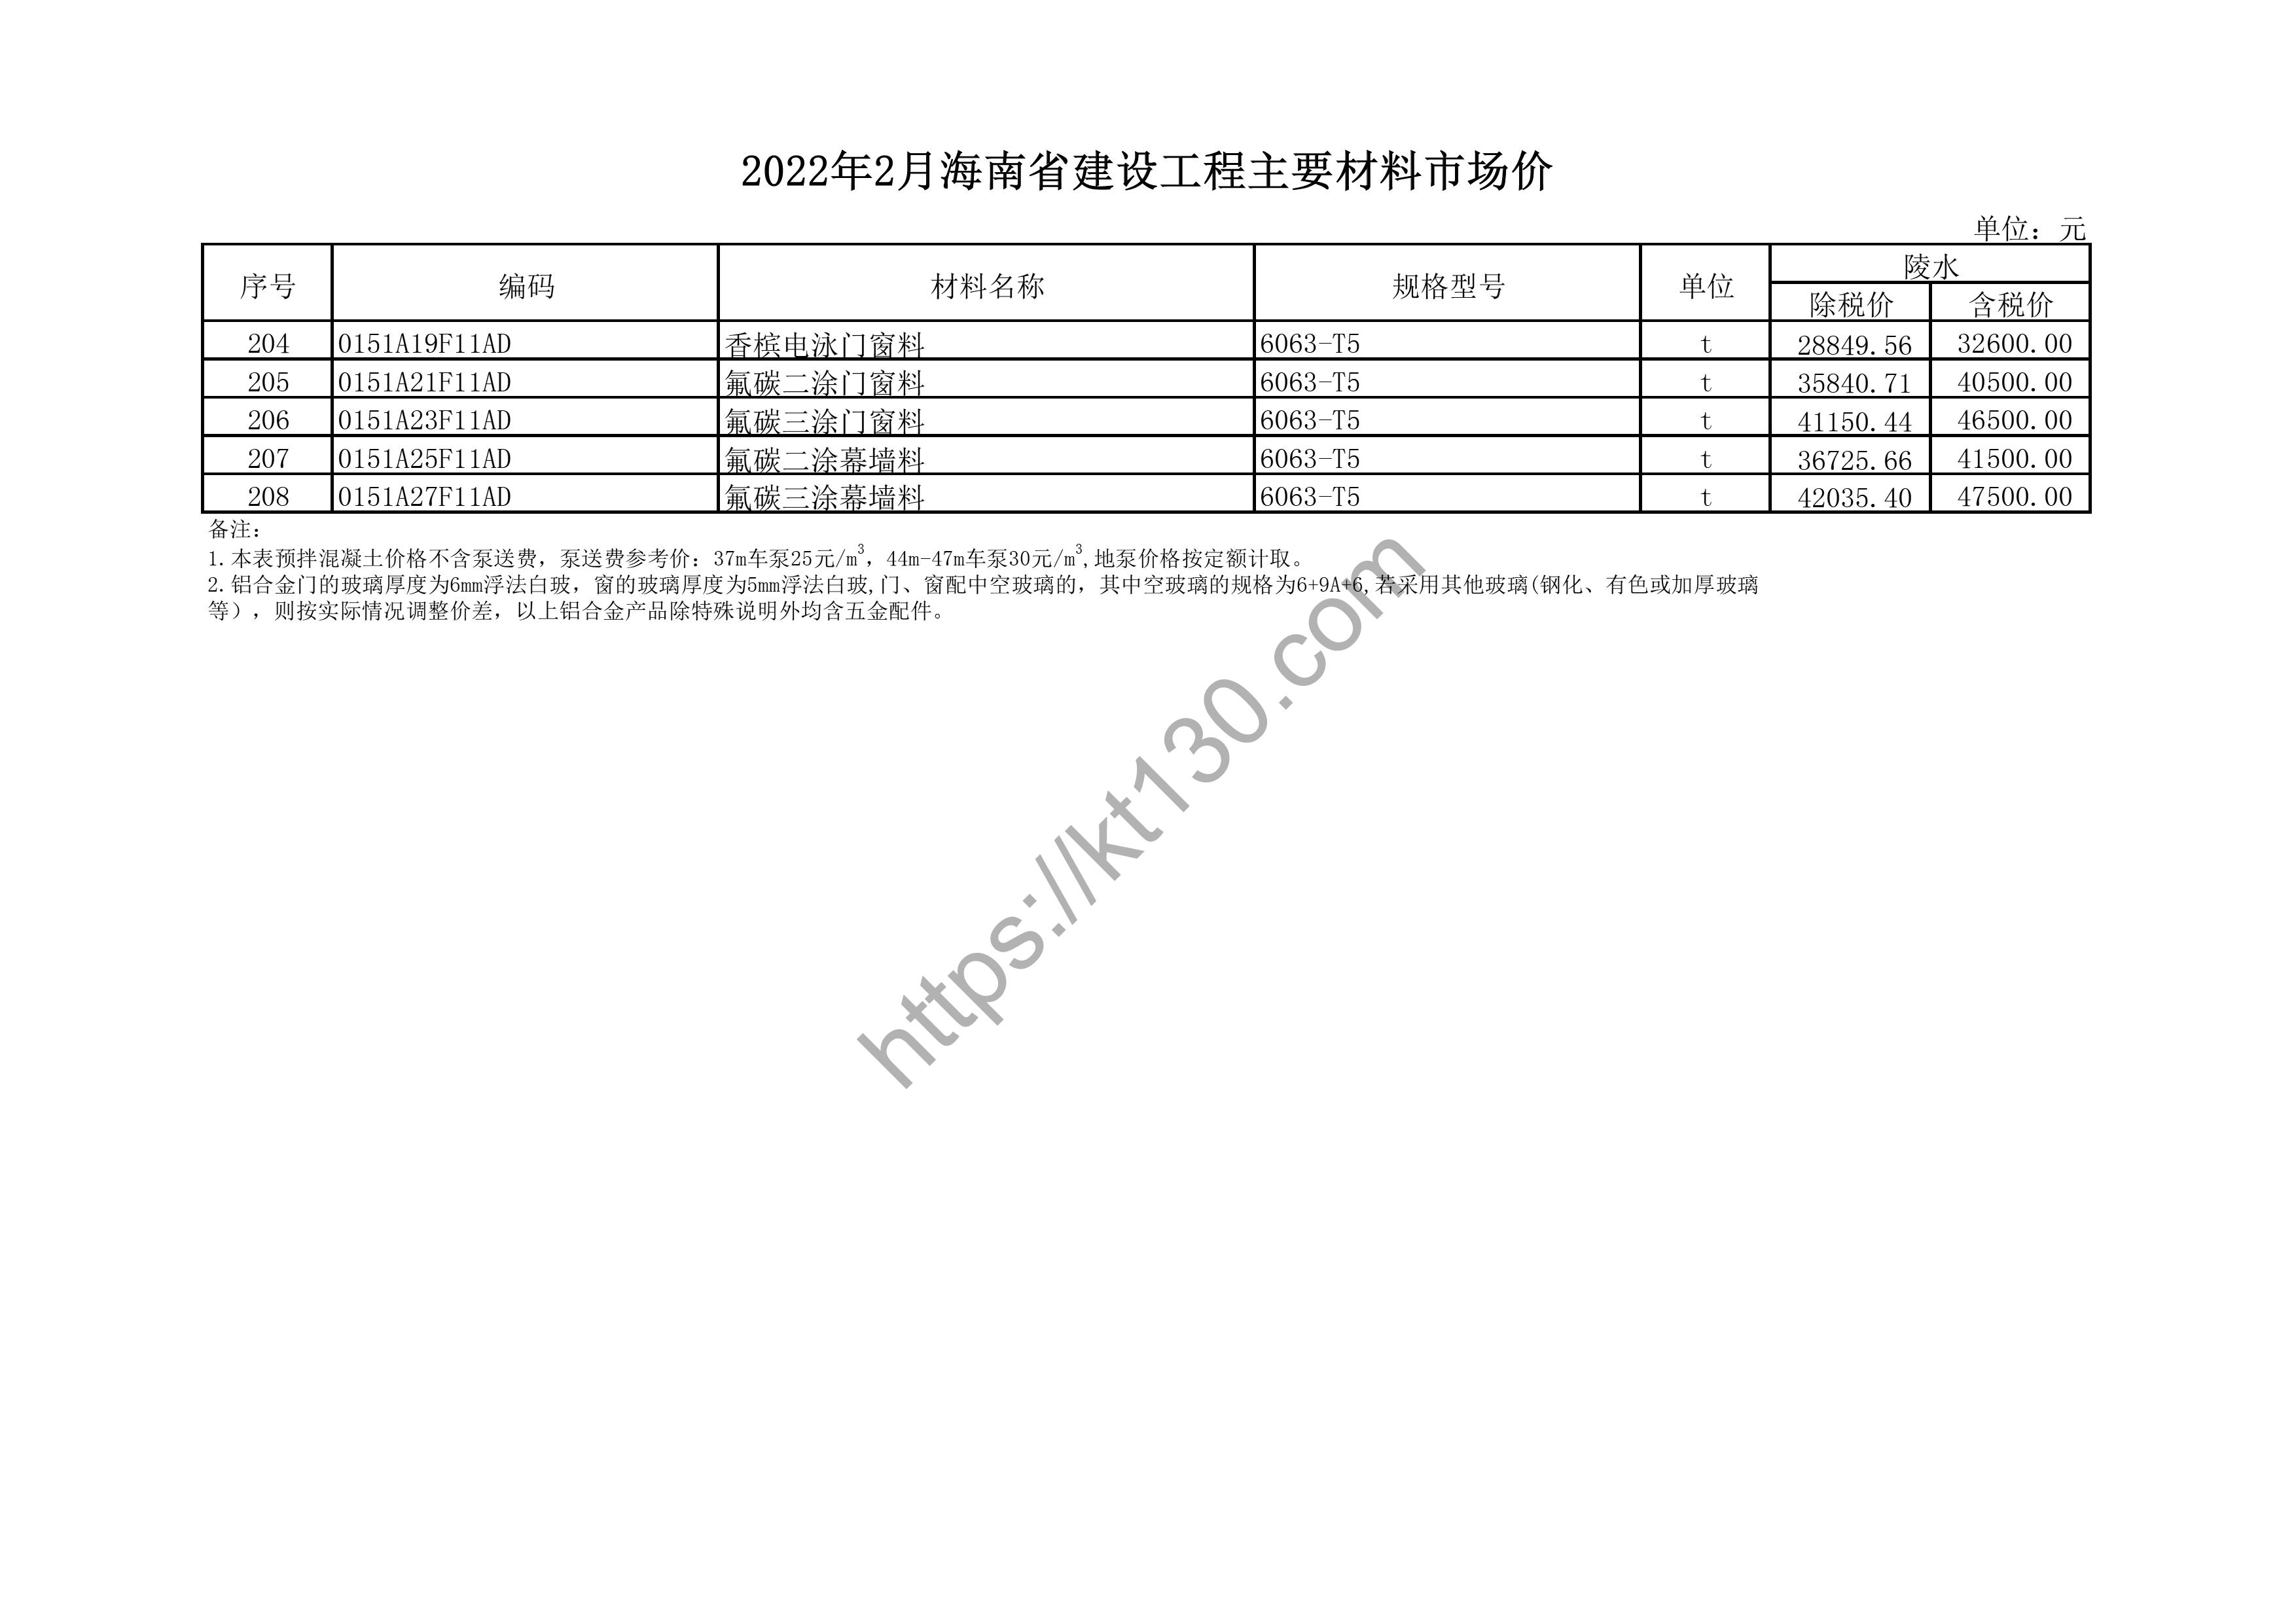 海南省2022年2月建筑材料价_PVC排水管_43820